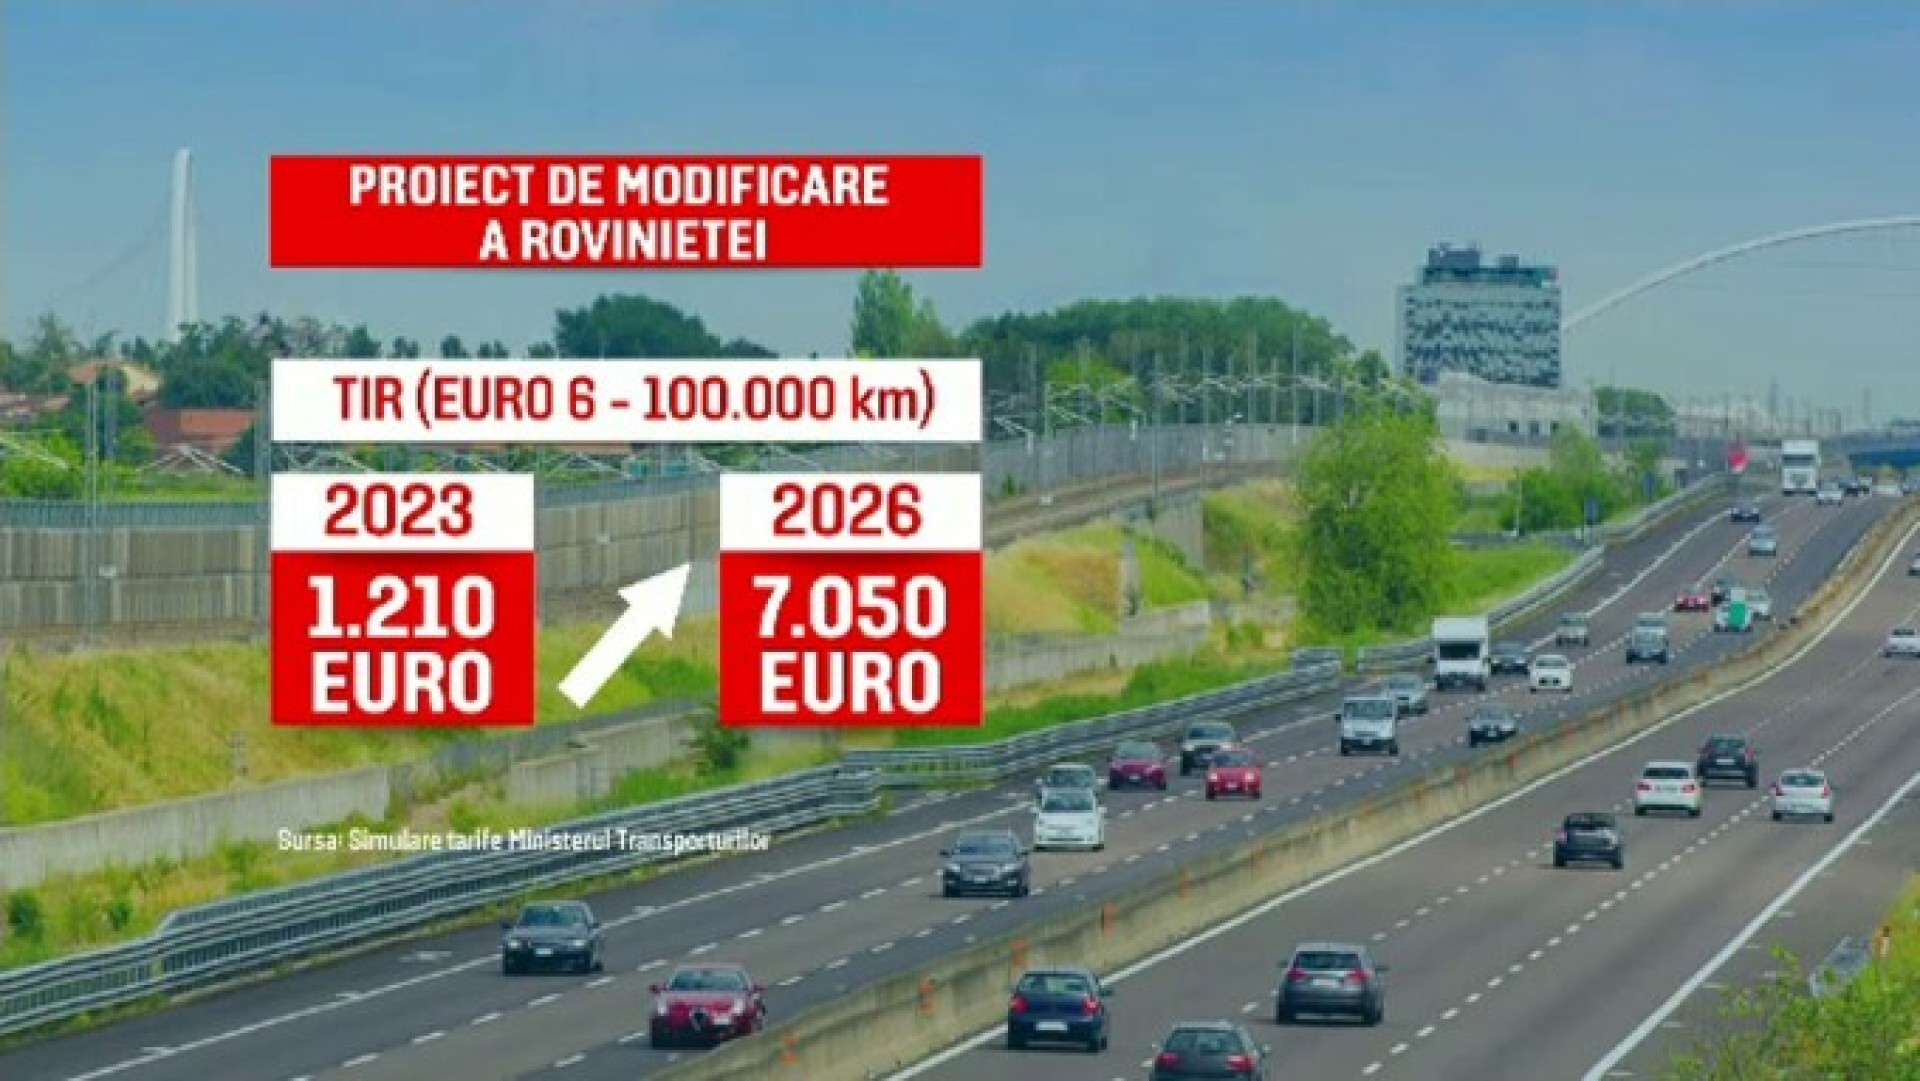 VIDEO. Din 2026, taxa de drum pentru un camion ajunge la 7.050 euro